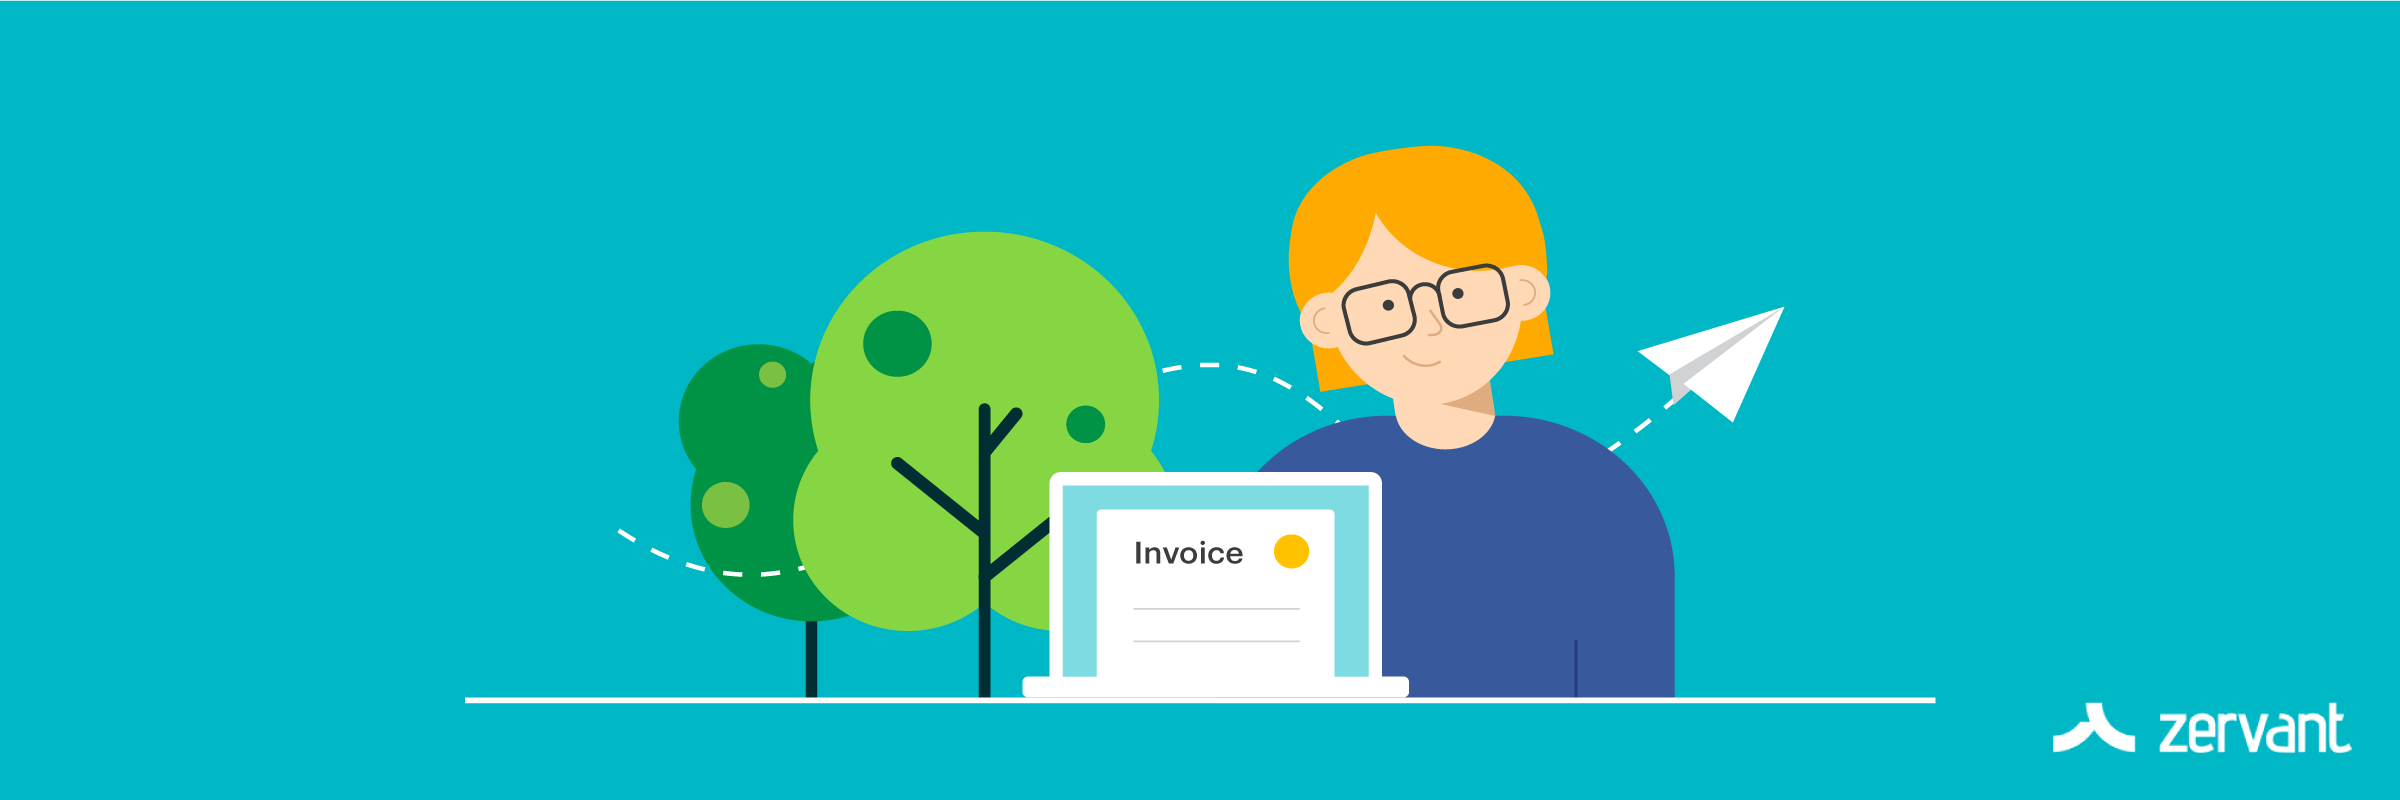 Invoice online